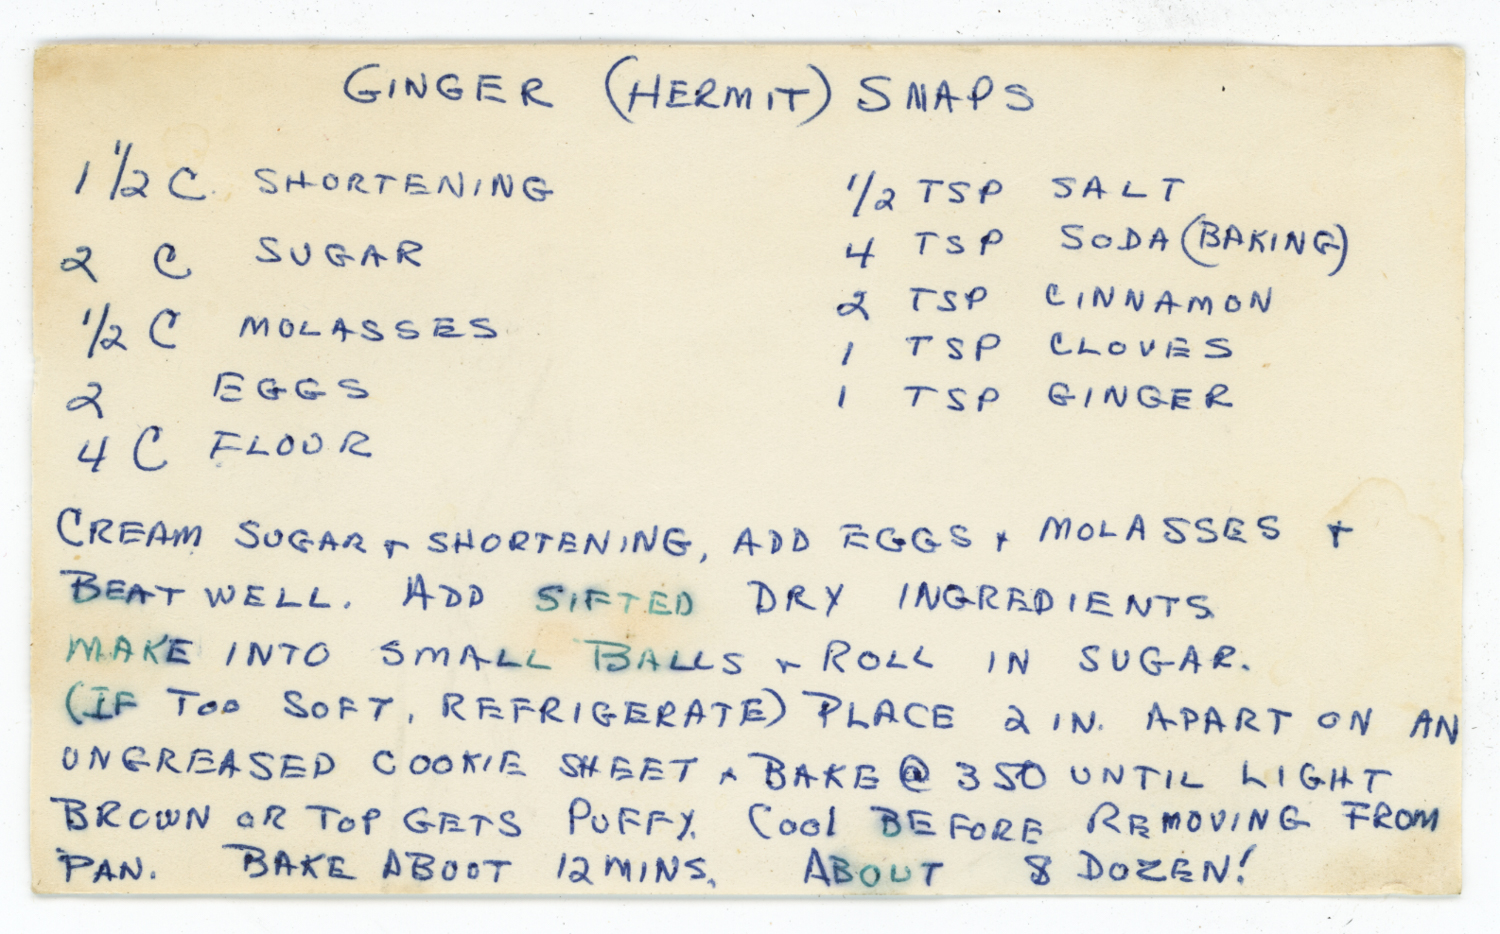 Ginger Hermit Cookies.jpg